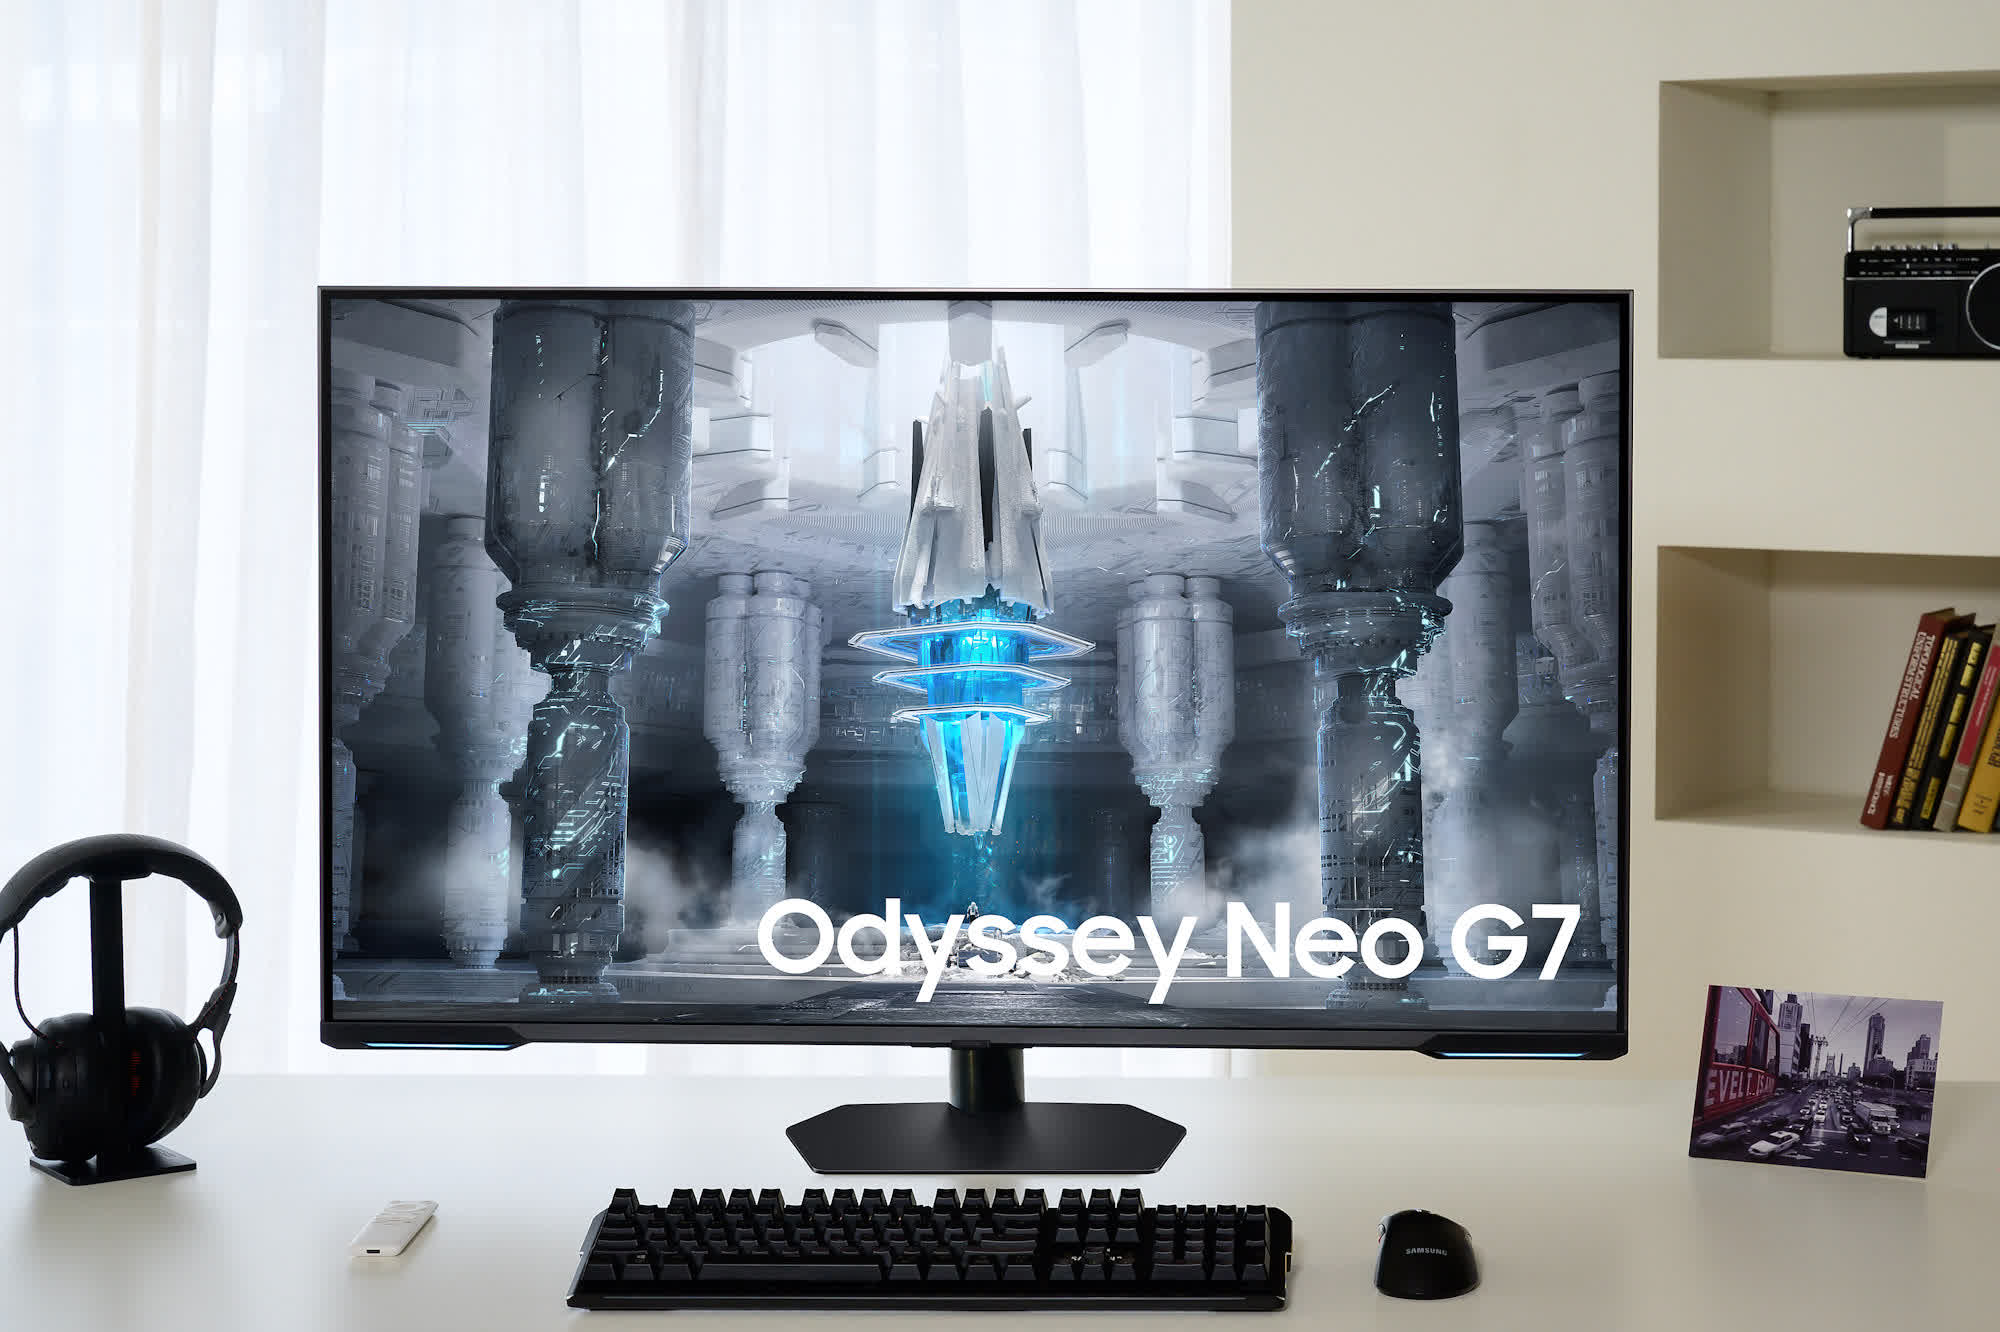 144Hz monitor Samsung Odyssey Neo G7 4K UHD trafia do sprzedaży za 1000 dolarów